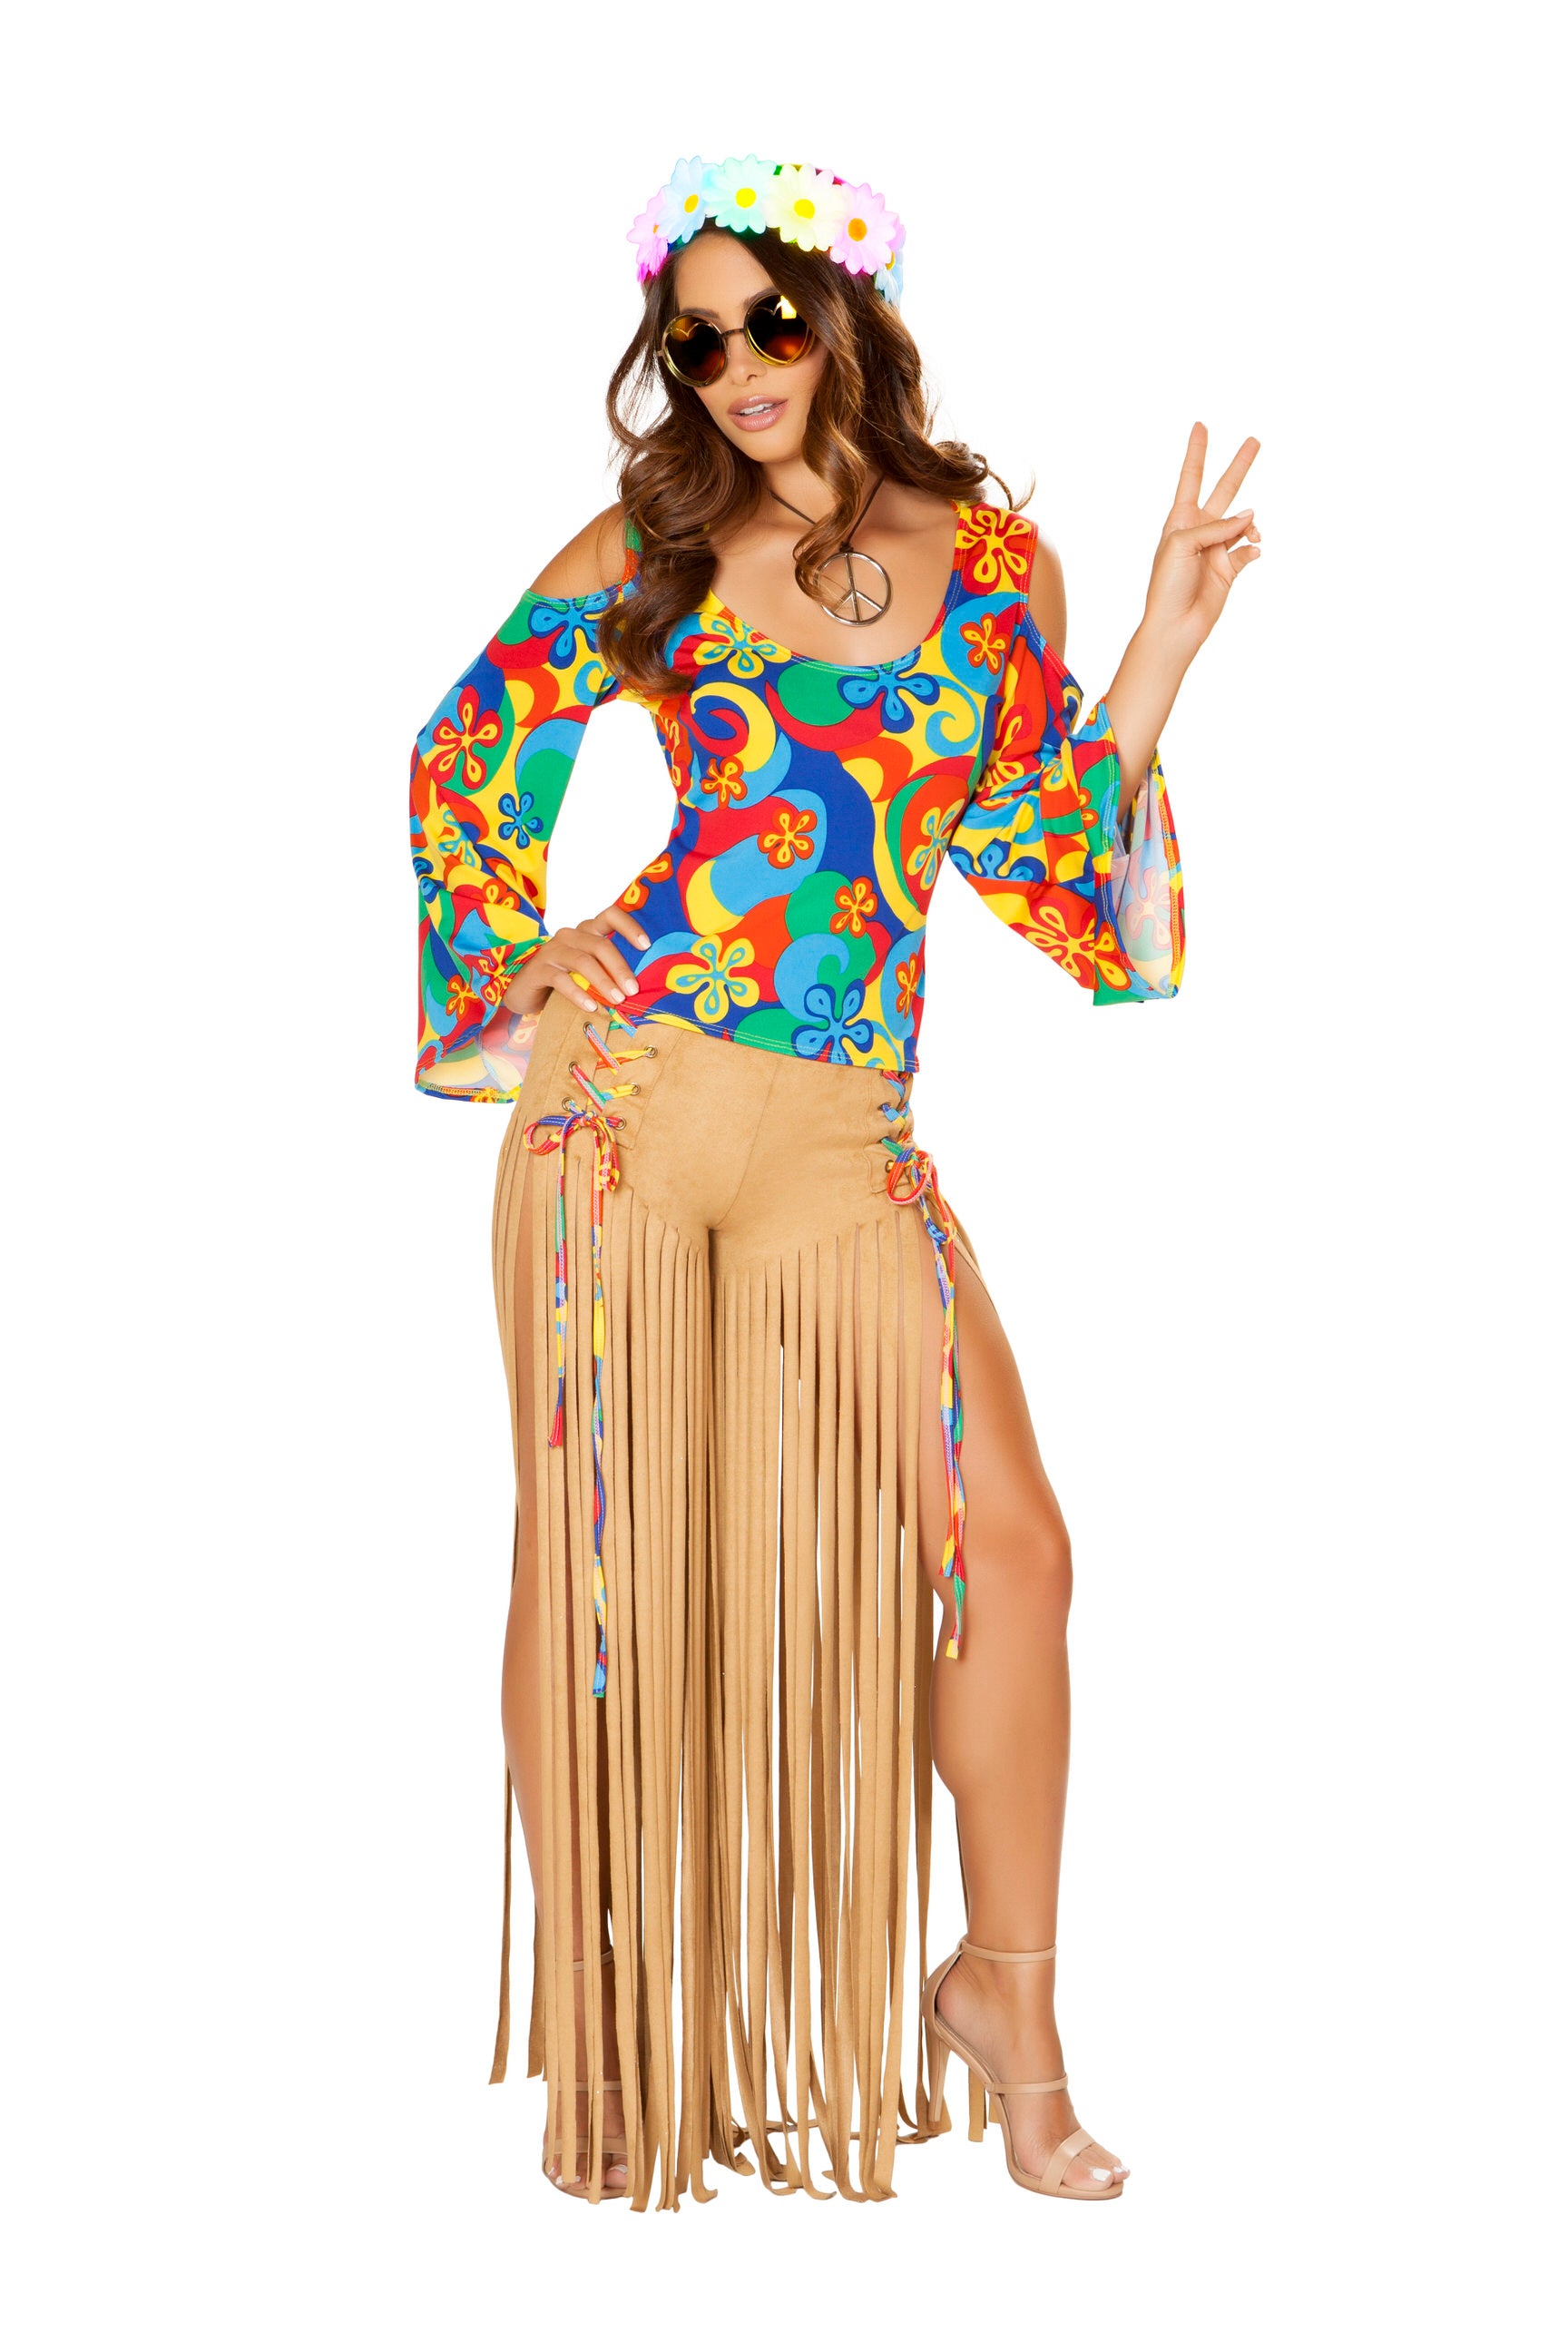 4881 - Roma Costume 2pc Hippie Princess Retro 